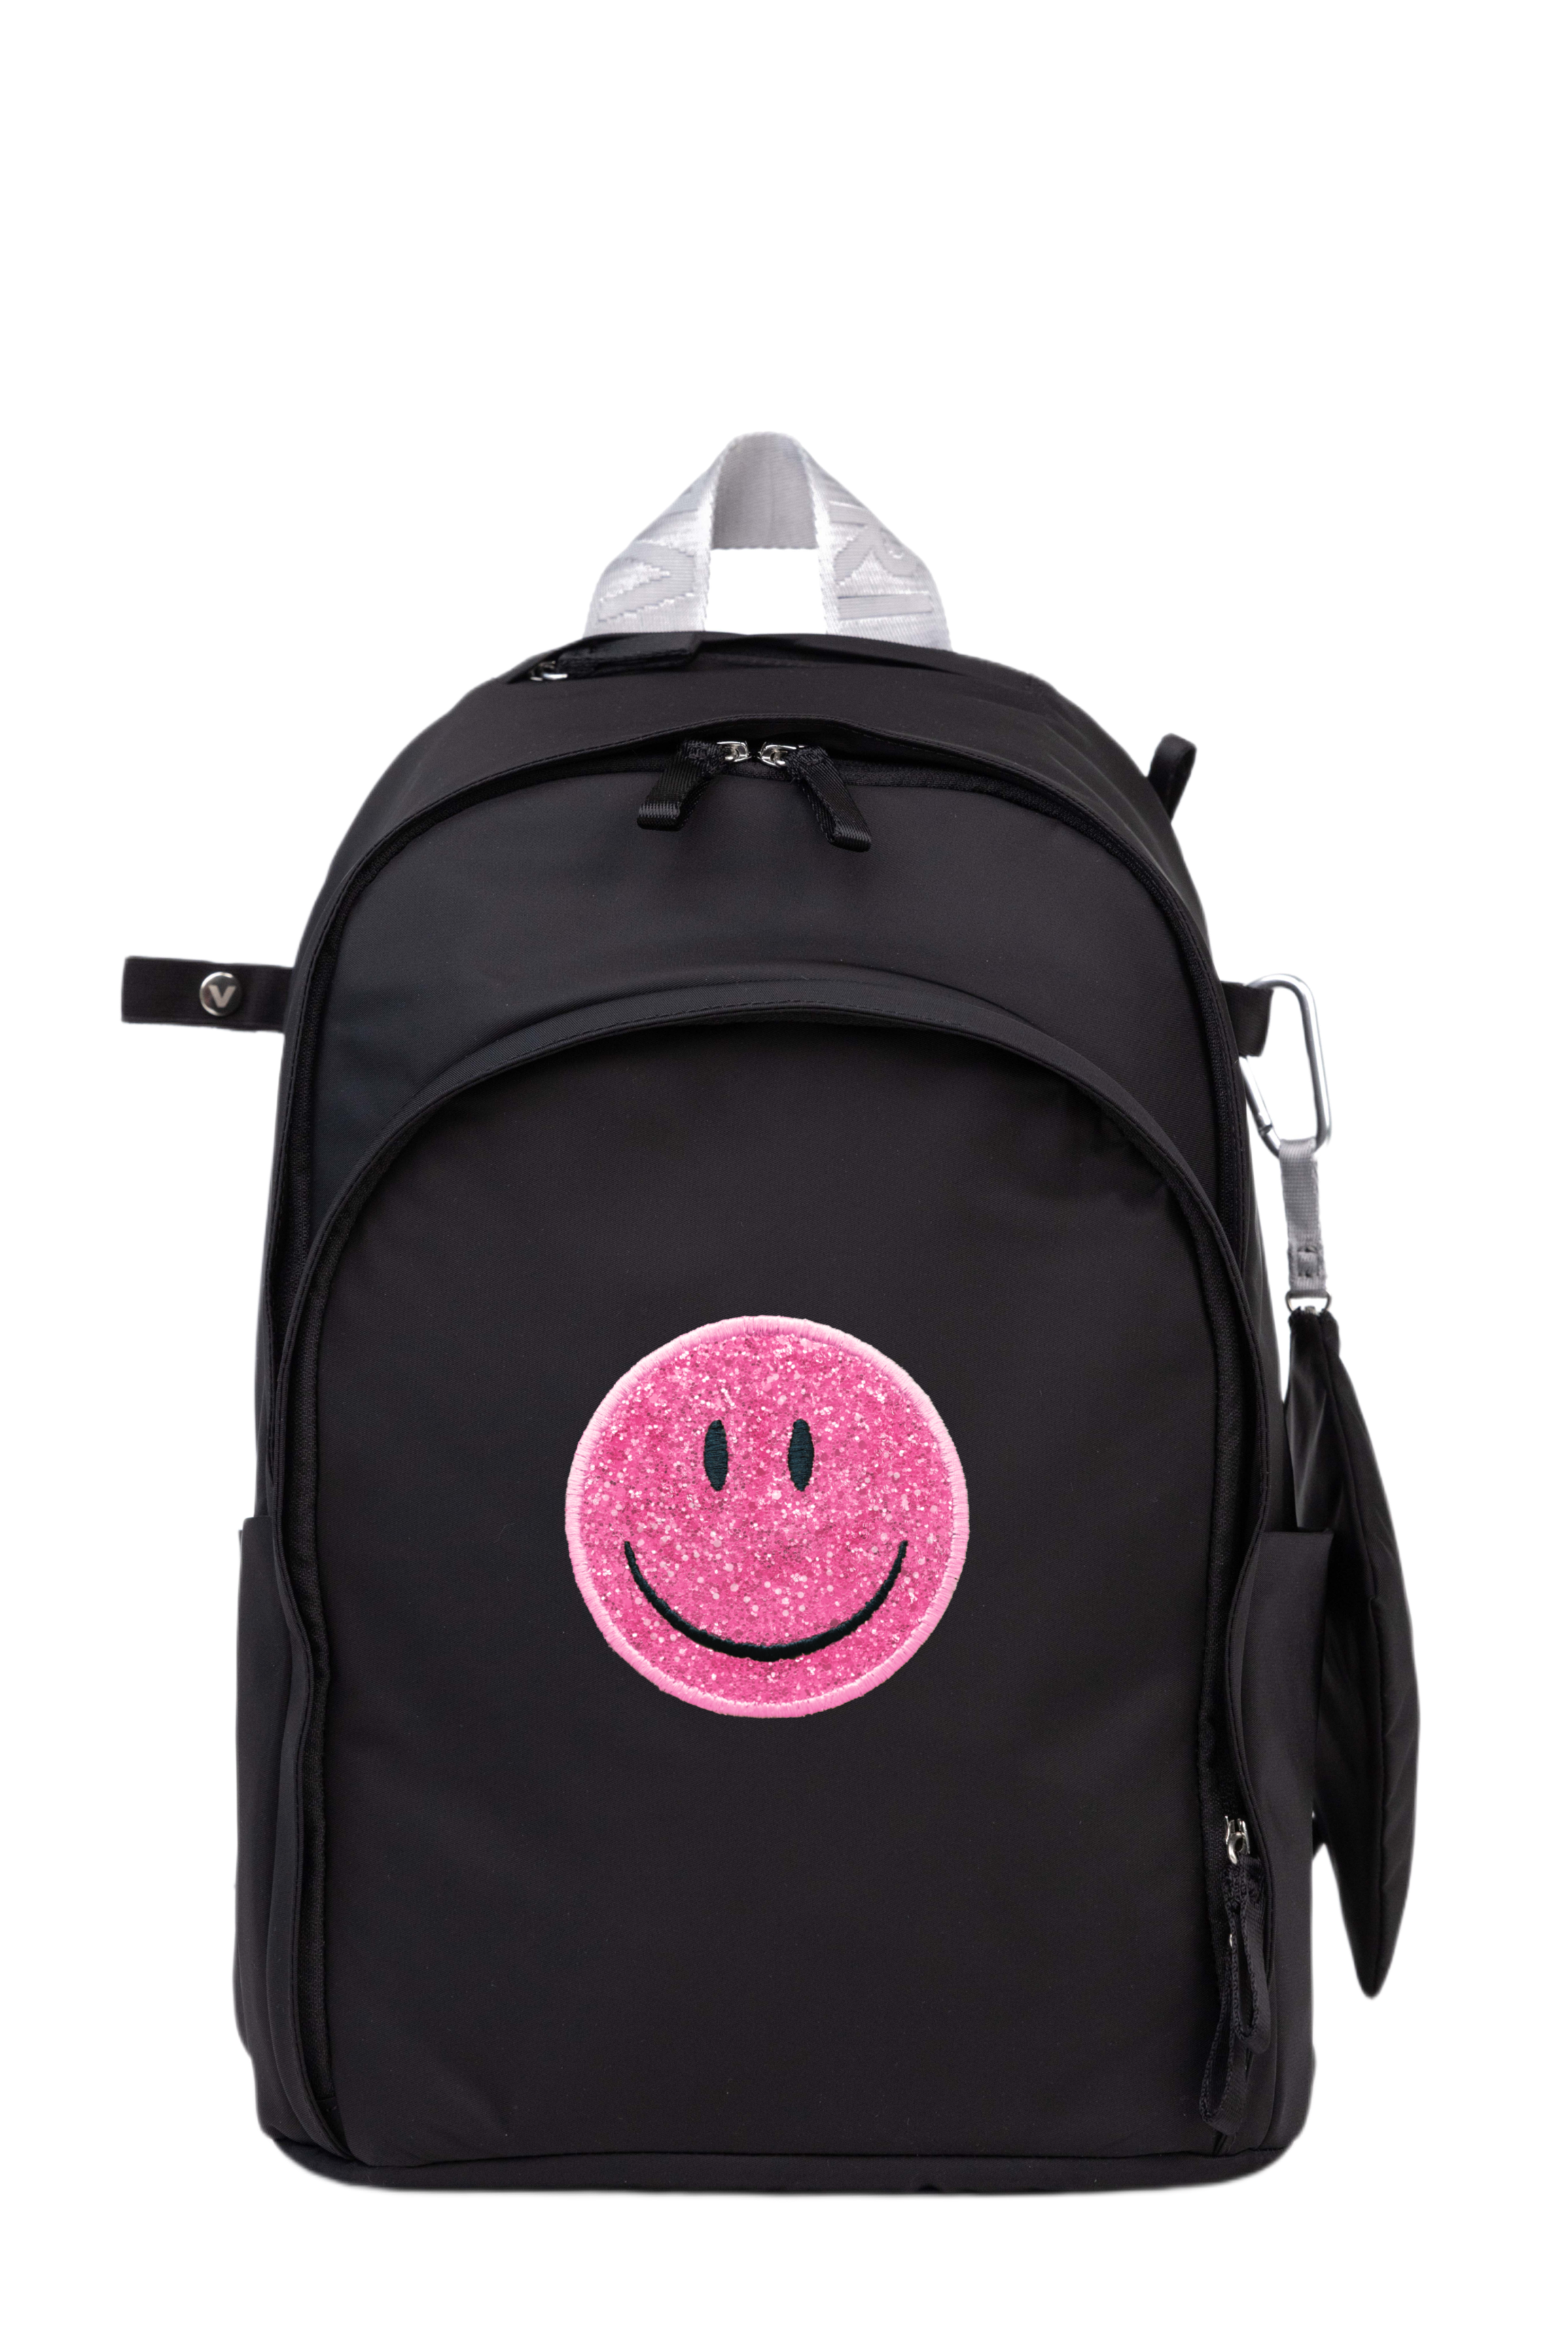 Novelty Backpack “Smile Face”